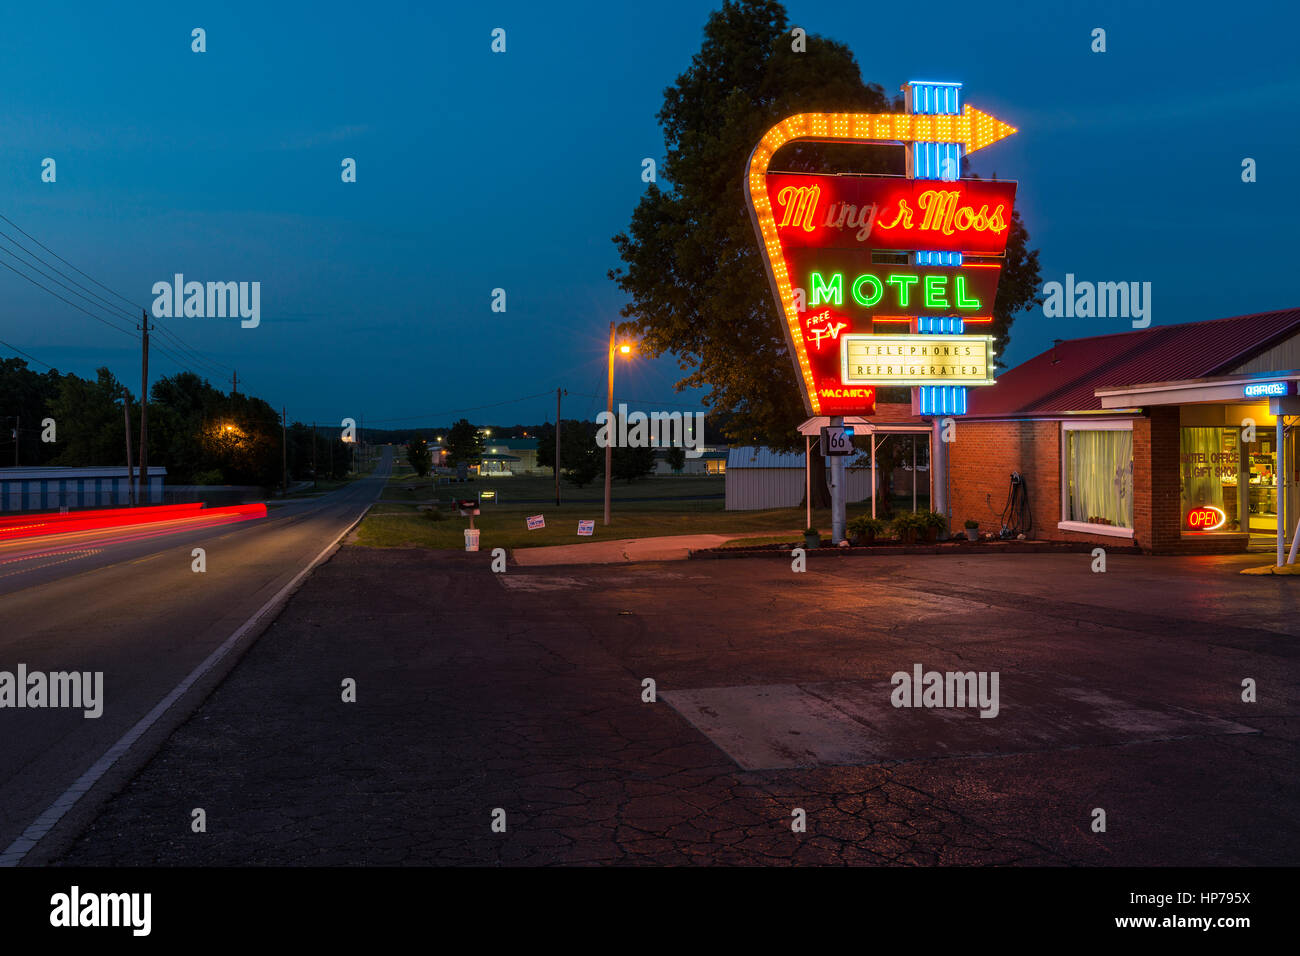 Liban, Missouri, États-Unis - le 7 juillet 2014 : Vue de la Munger Moss Motel la nuit le long de la Route 66 au Liban, Missouri, États-Unis Banque D'Images